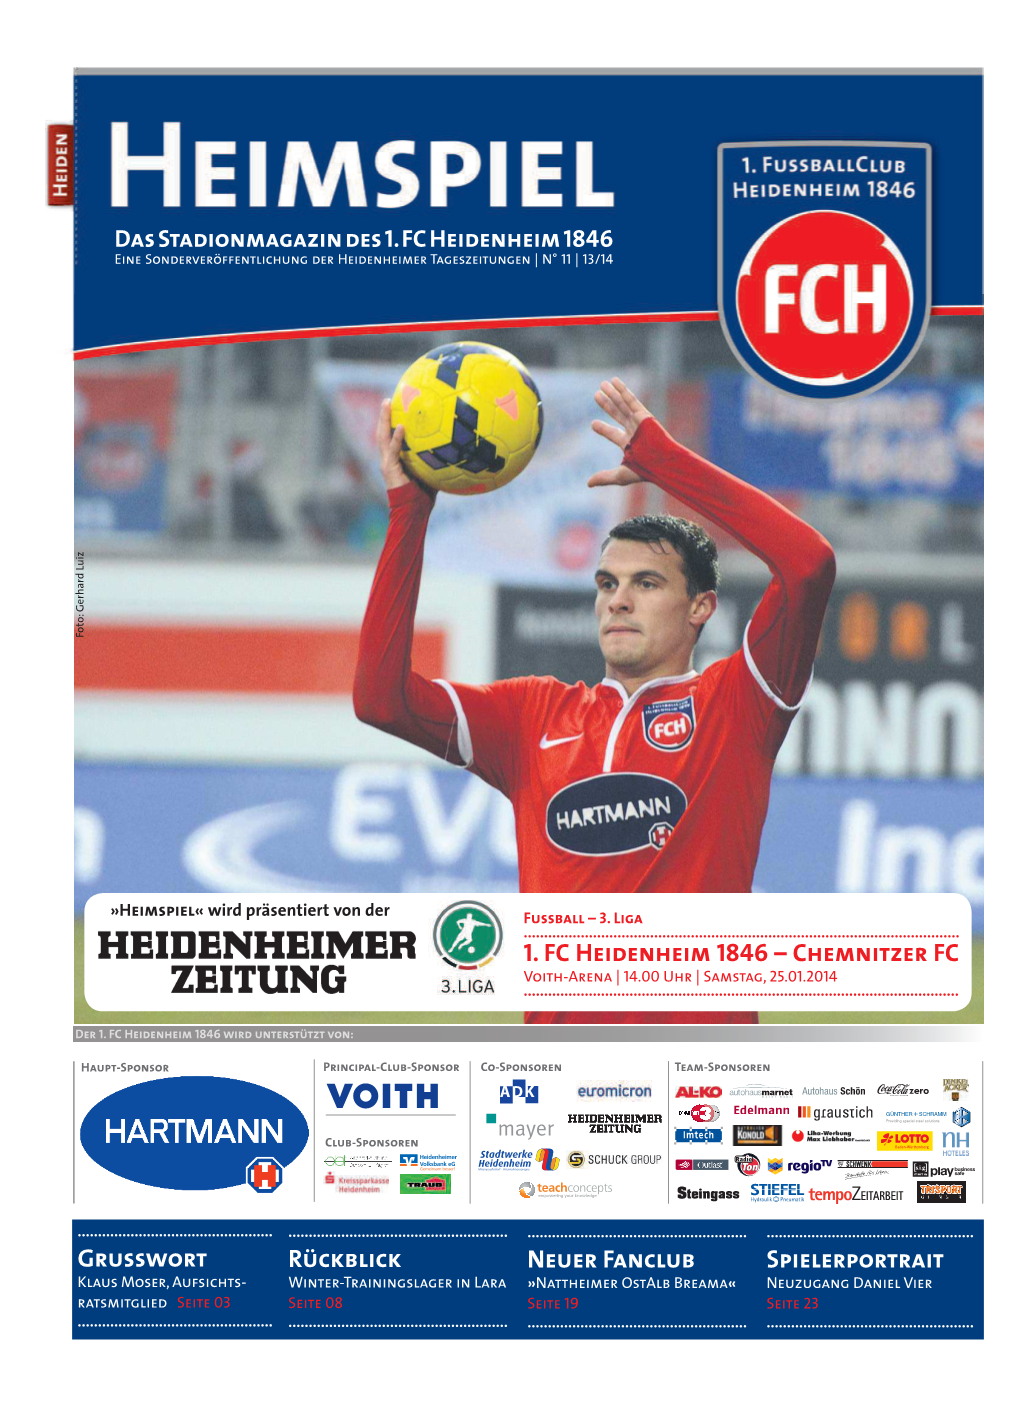 Grusswort Rückblick Neuer Fanclub Spielerportrait 1. FC Heidenheim